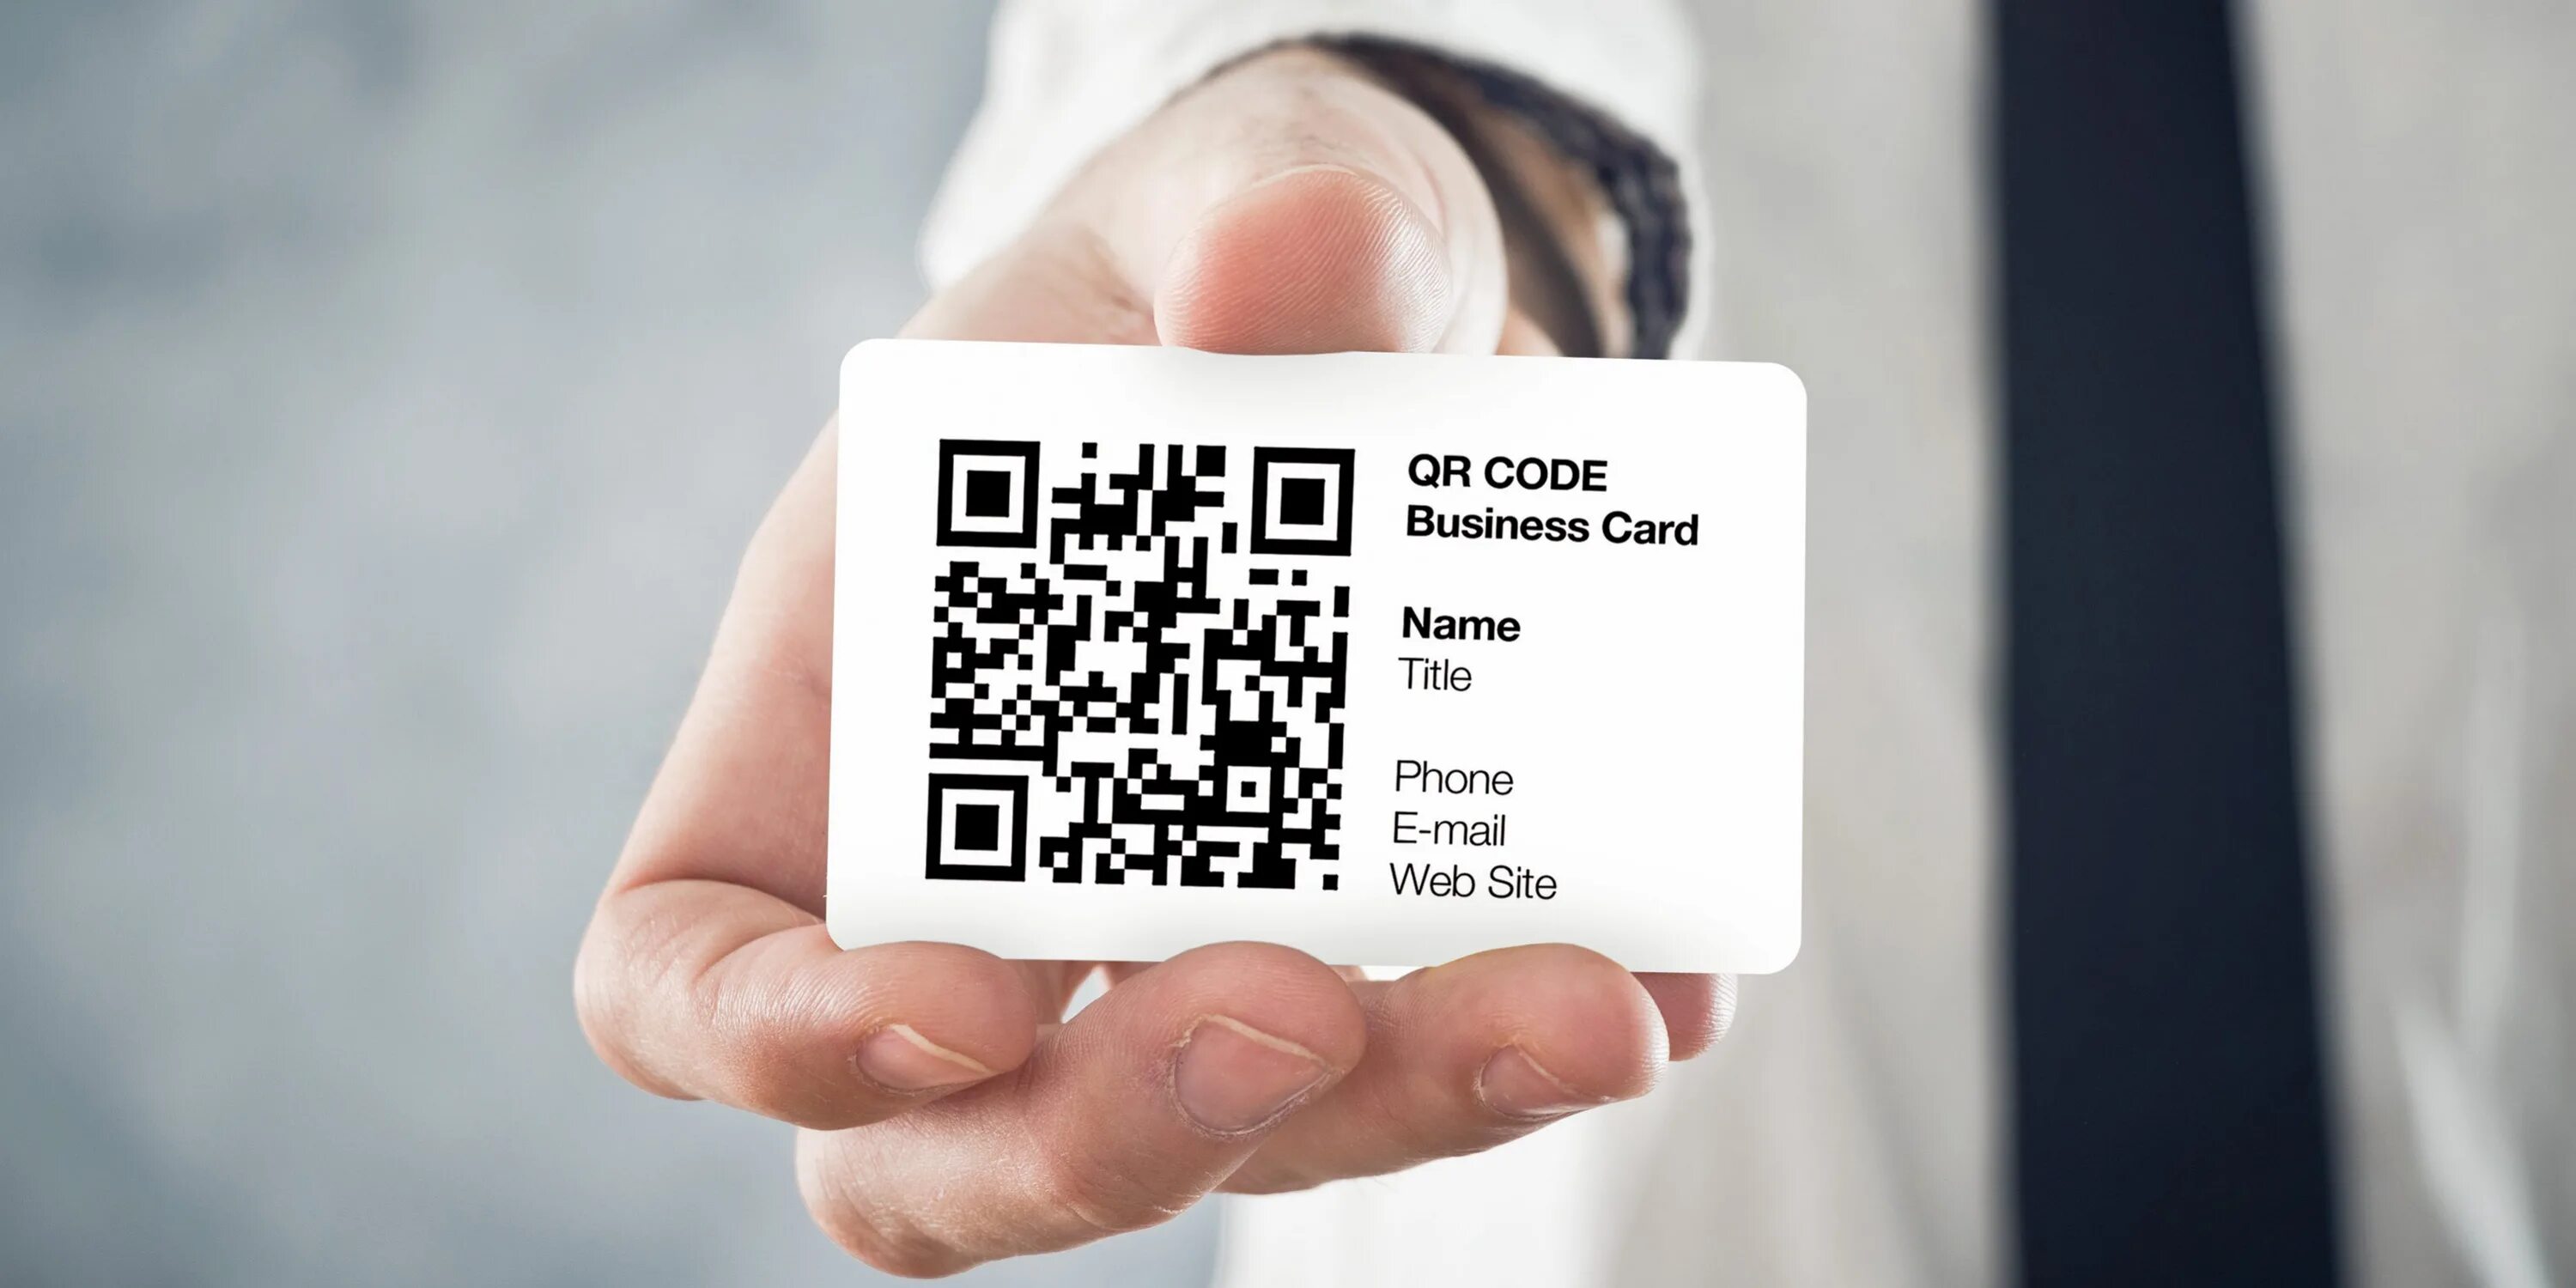 Визитка с QR кодом. Пластиковая визитка с QR кодом. Образец визитки с QR кодом. Бейджик с QR кодом. Qr код такси